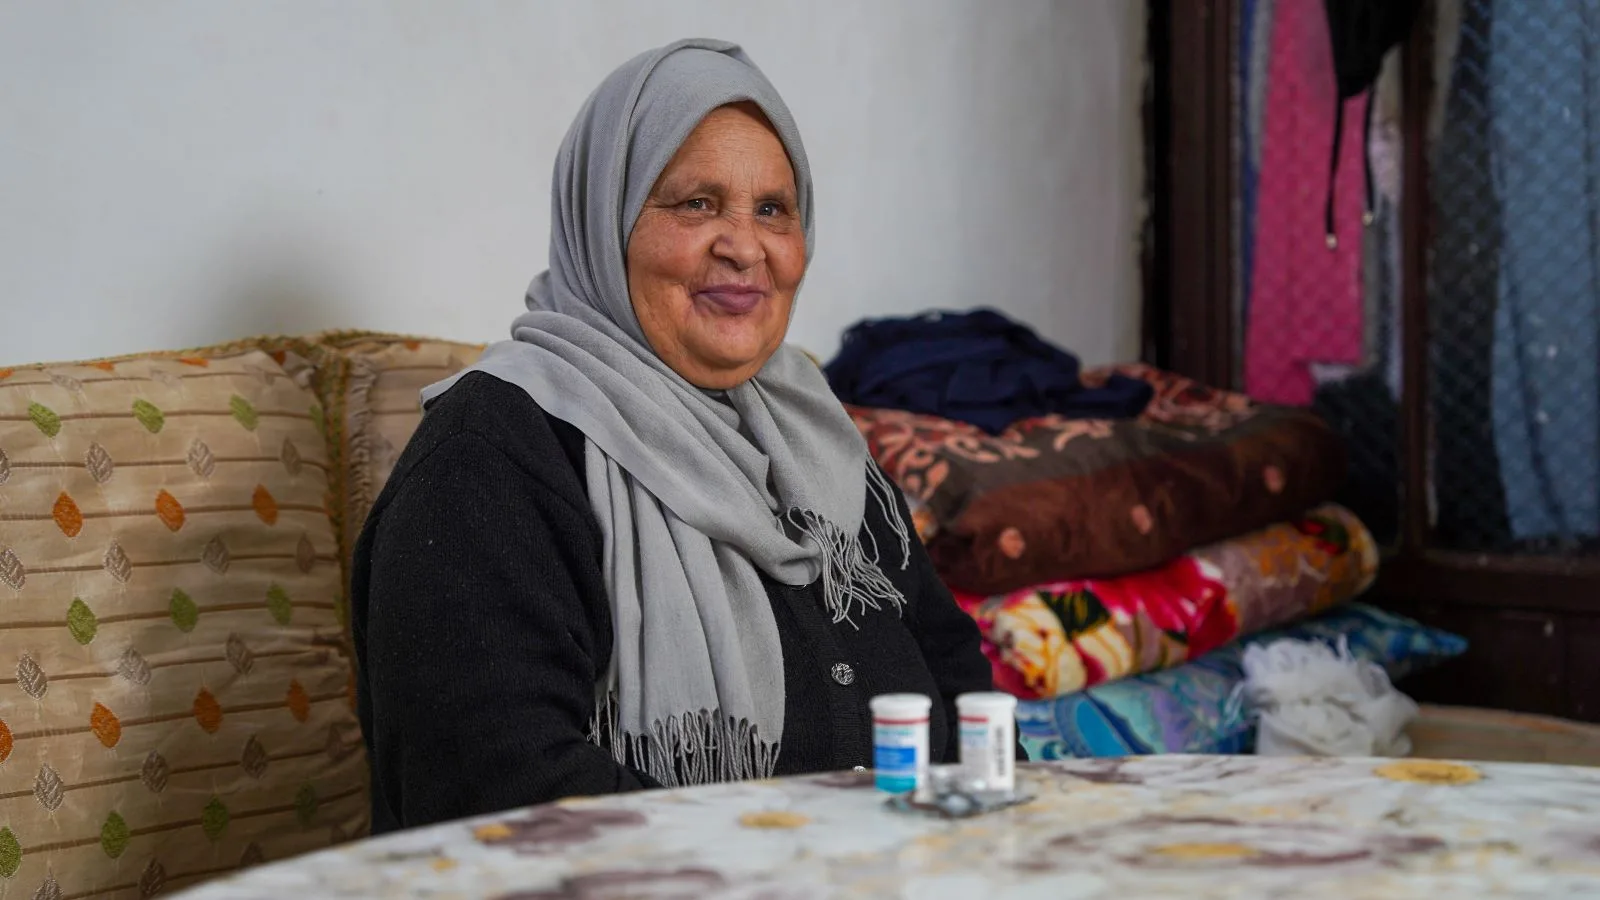 




فاطمة، مواطنة مغربية، مستفيدة من إعانة برنامج الدعم الاجتماعي المباشر



